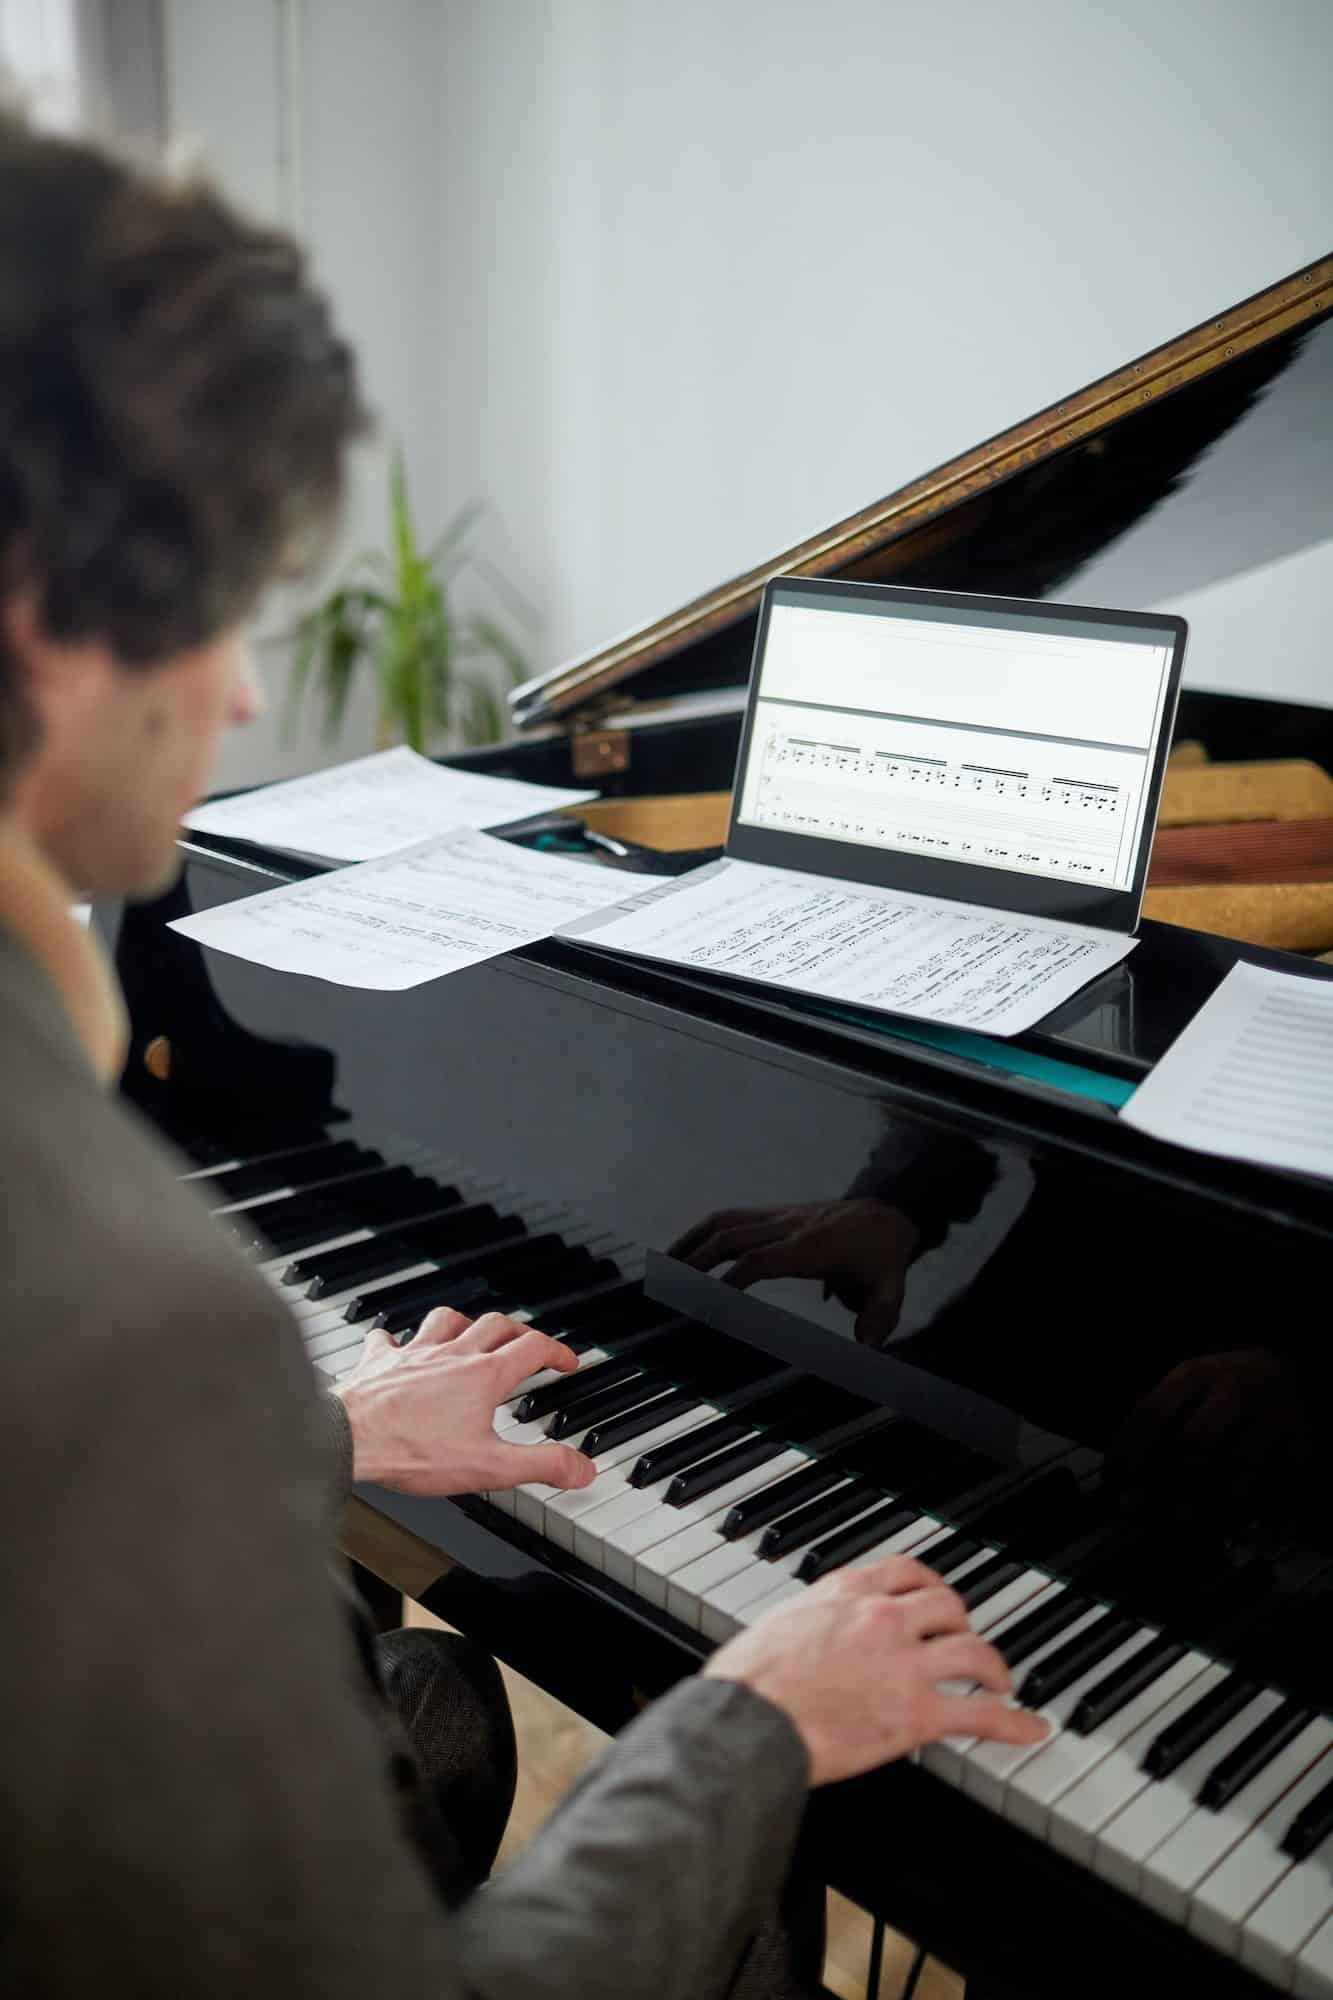 Comment apprendre à jouer rapidement du piano en ligne grâce à des partitions ?